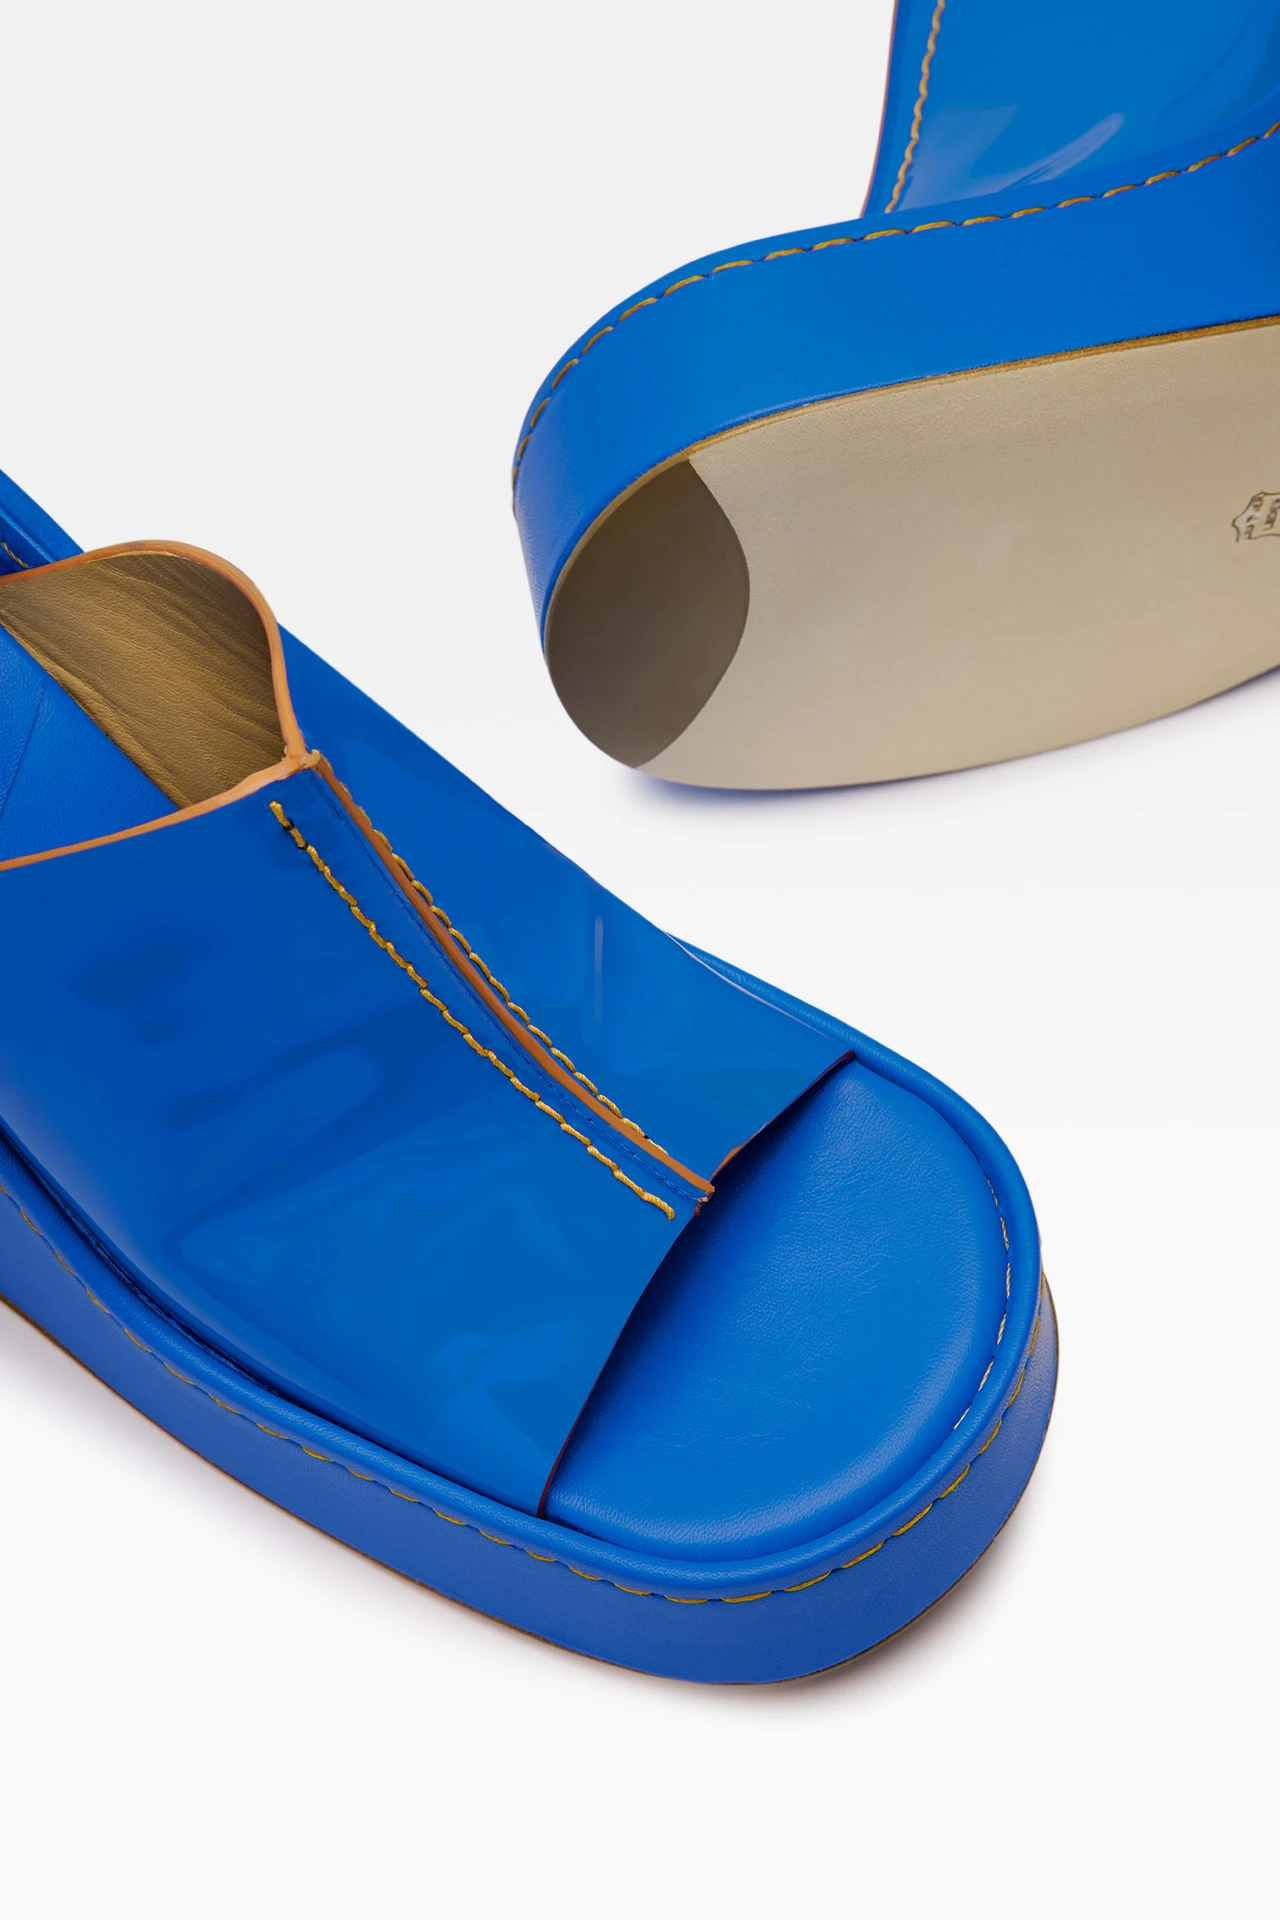 miista-rhea-blue-sandals-5